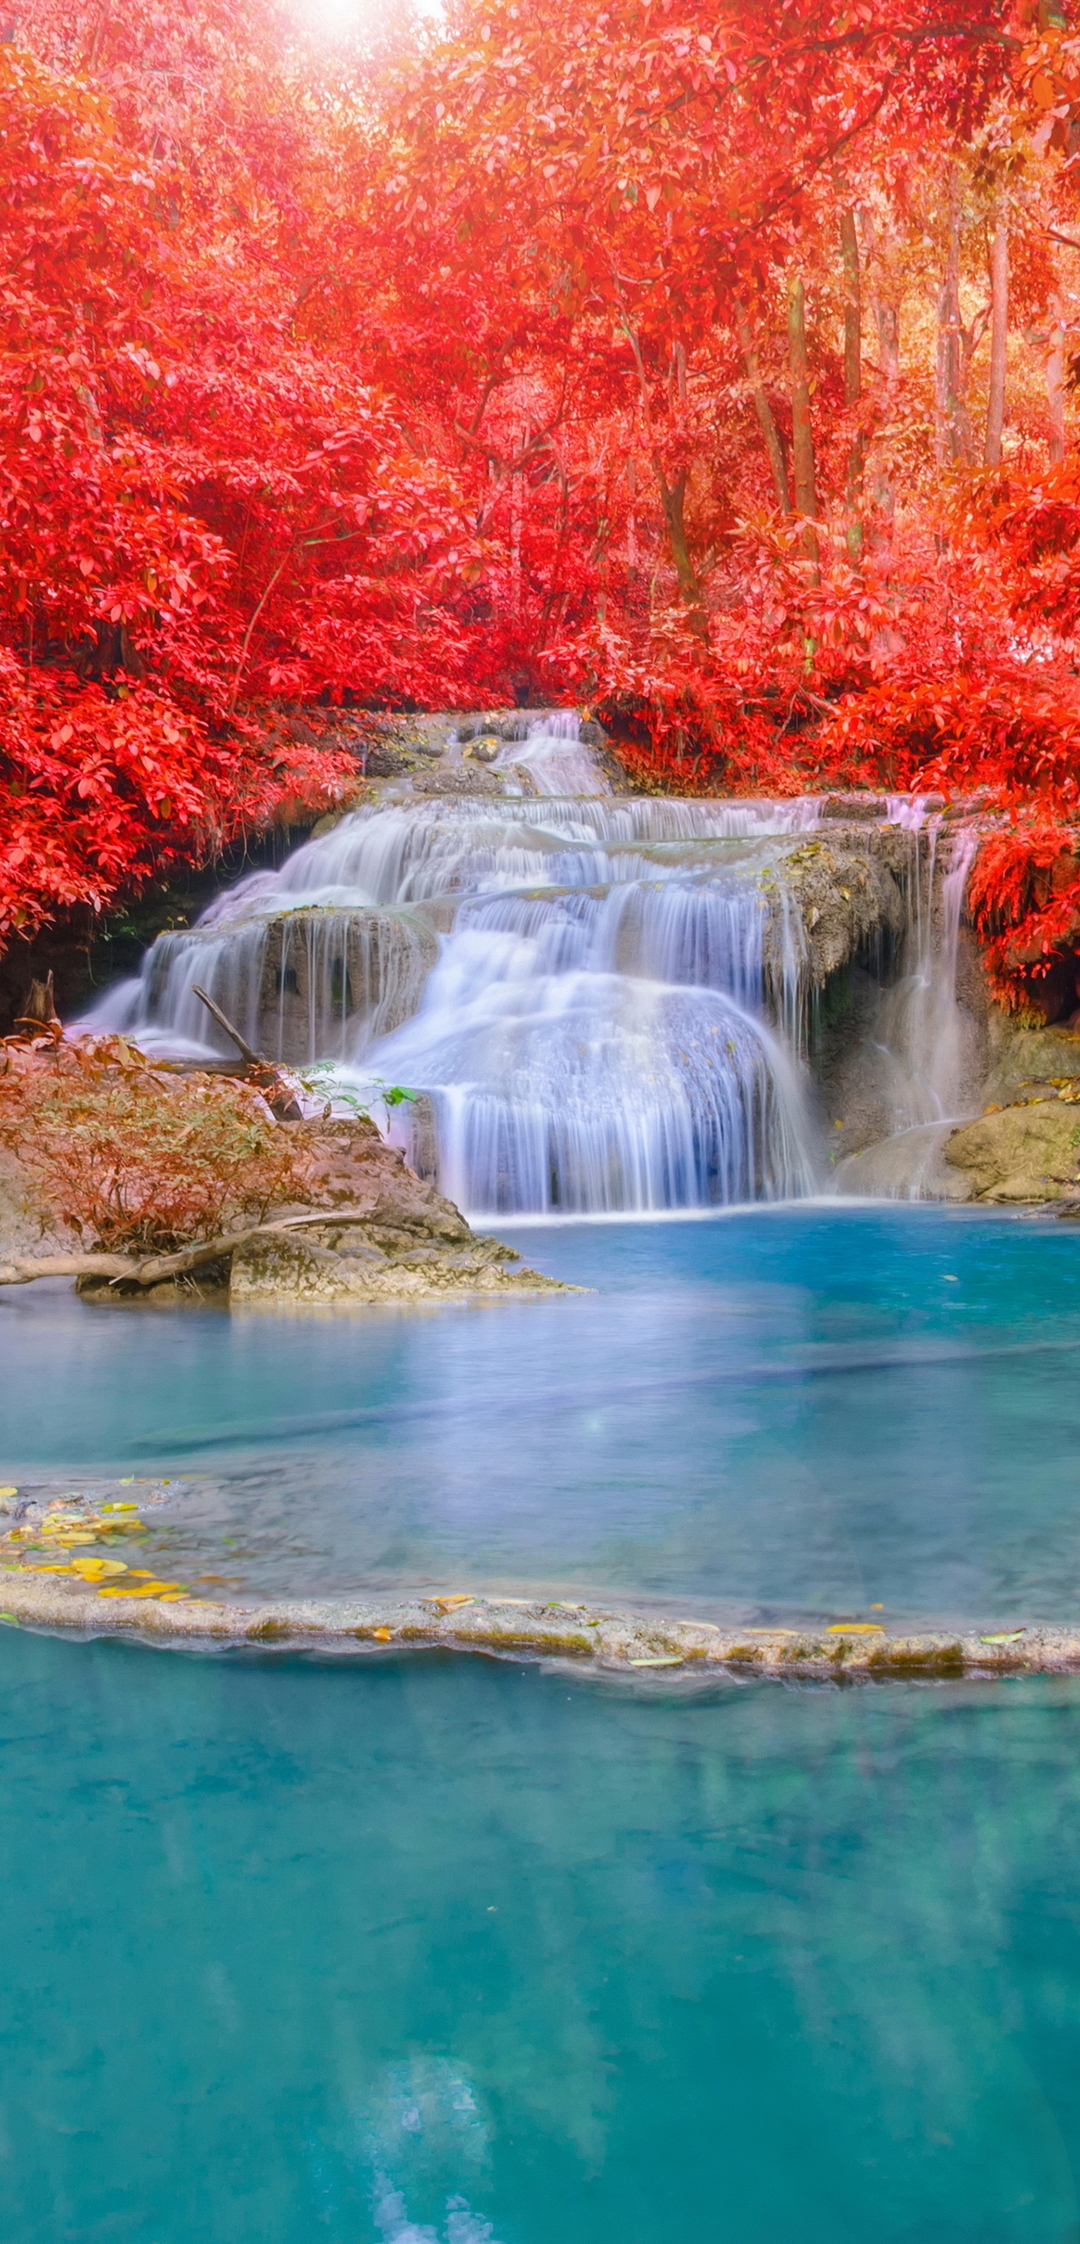 Картинка: Водопад, озеро, вода, деревья, красные, листва, осень, лес, камни